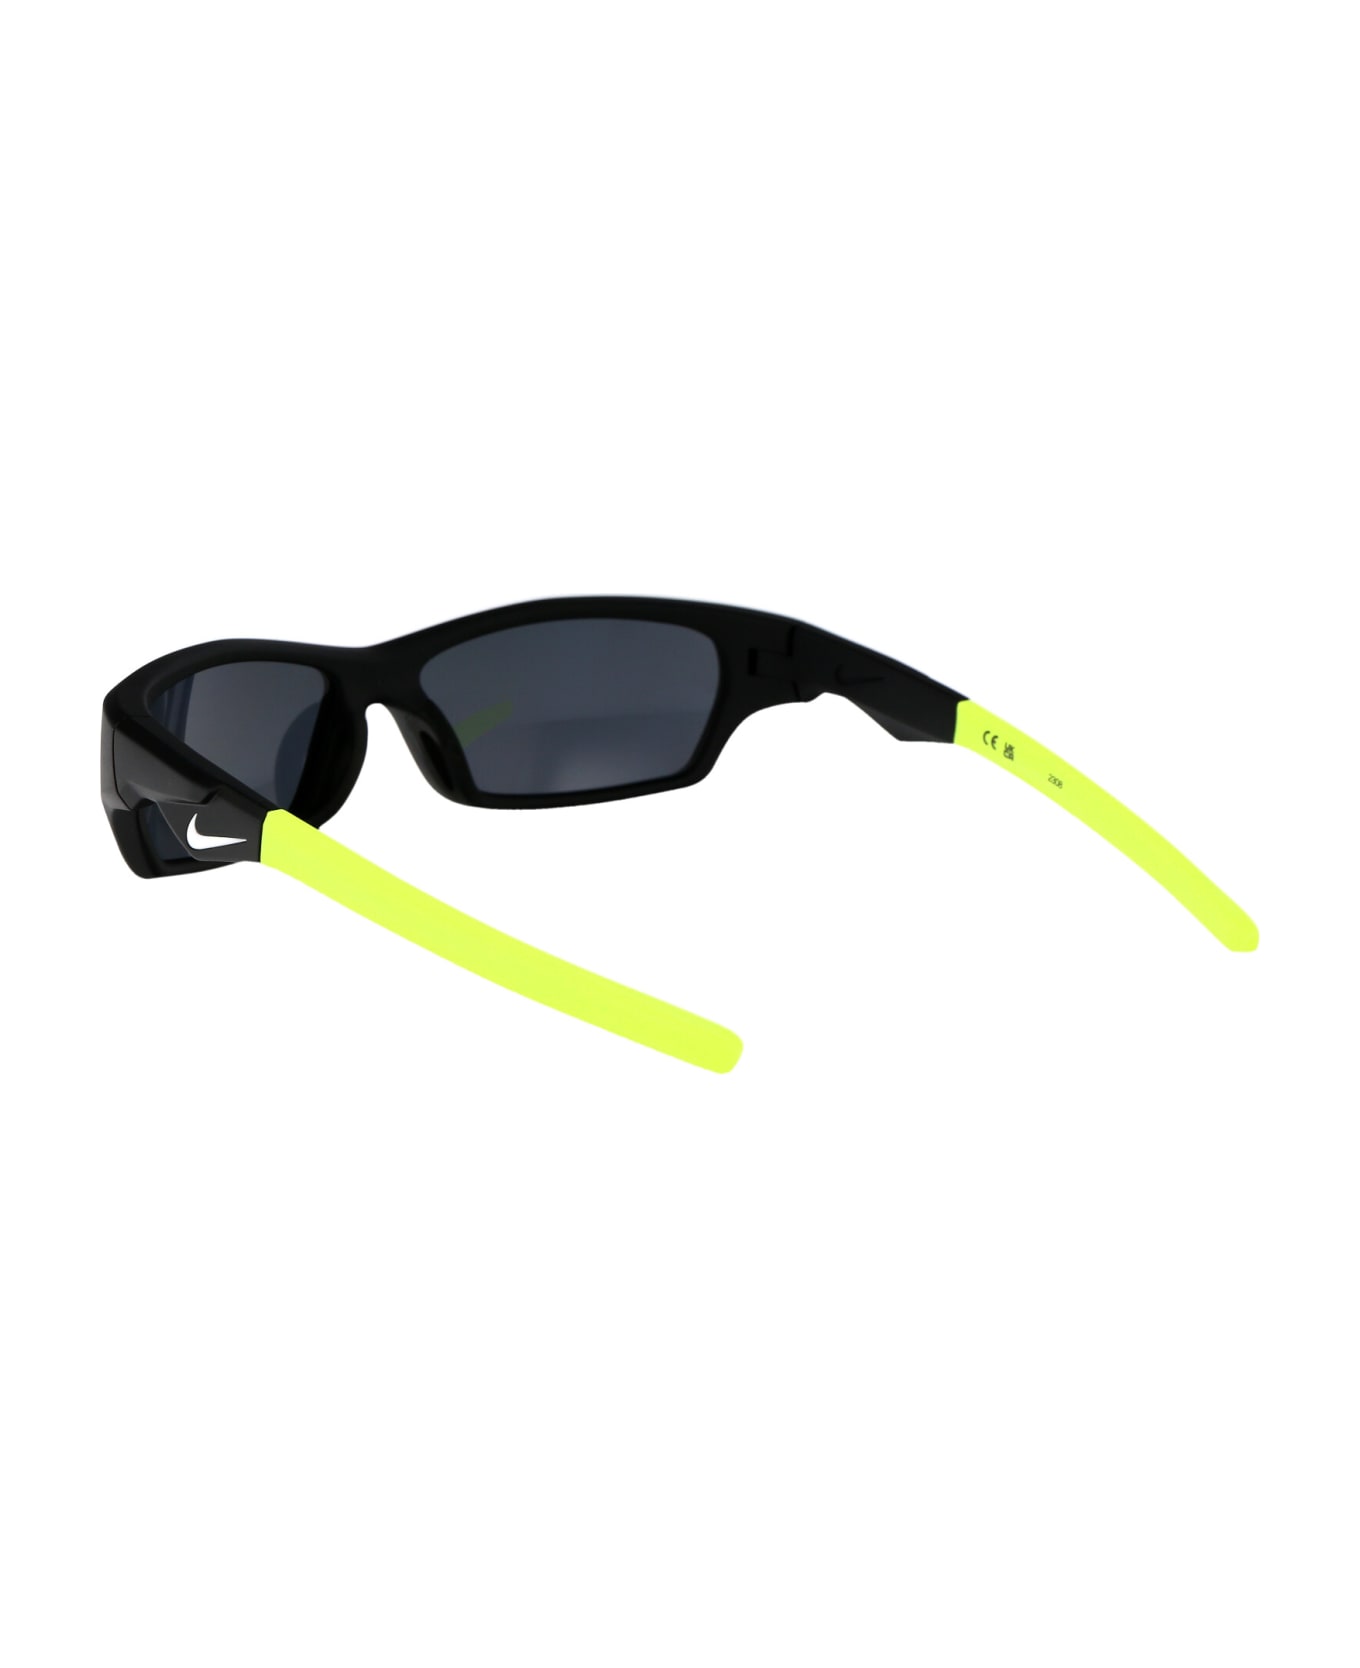 Nike Jolt Sunglasses - 010 MATTE BLACK NOIR MAT